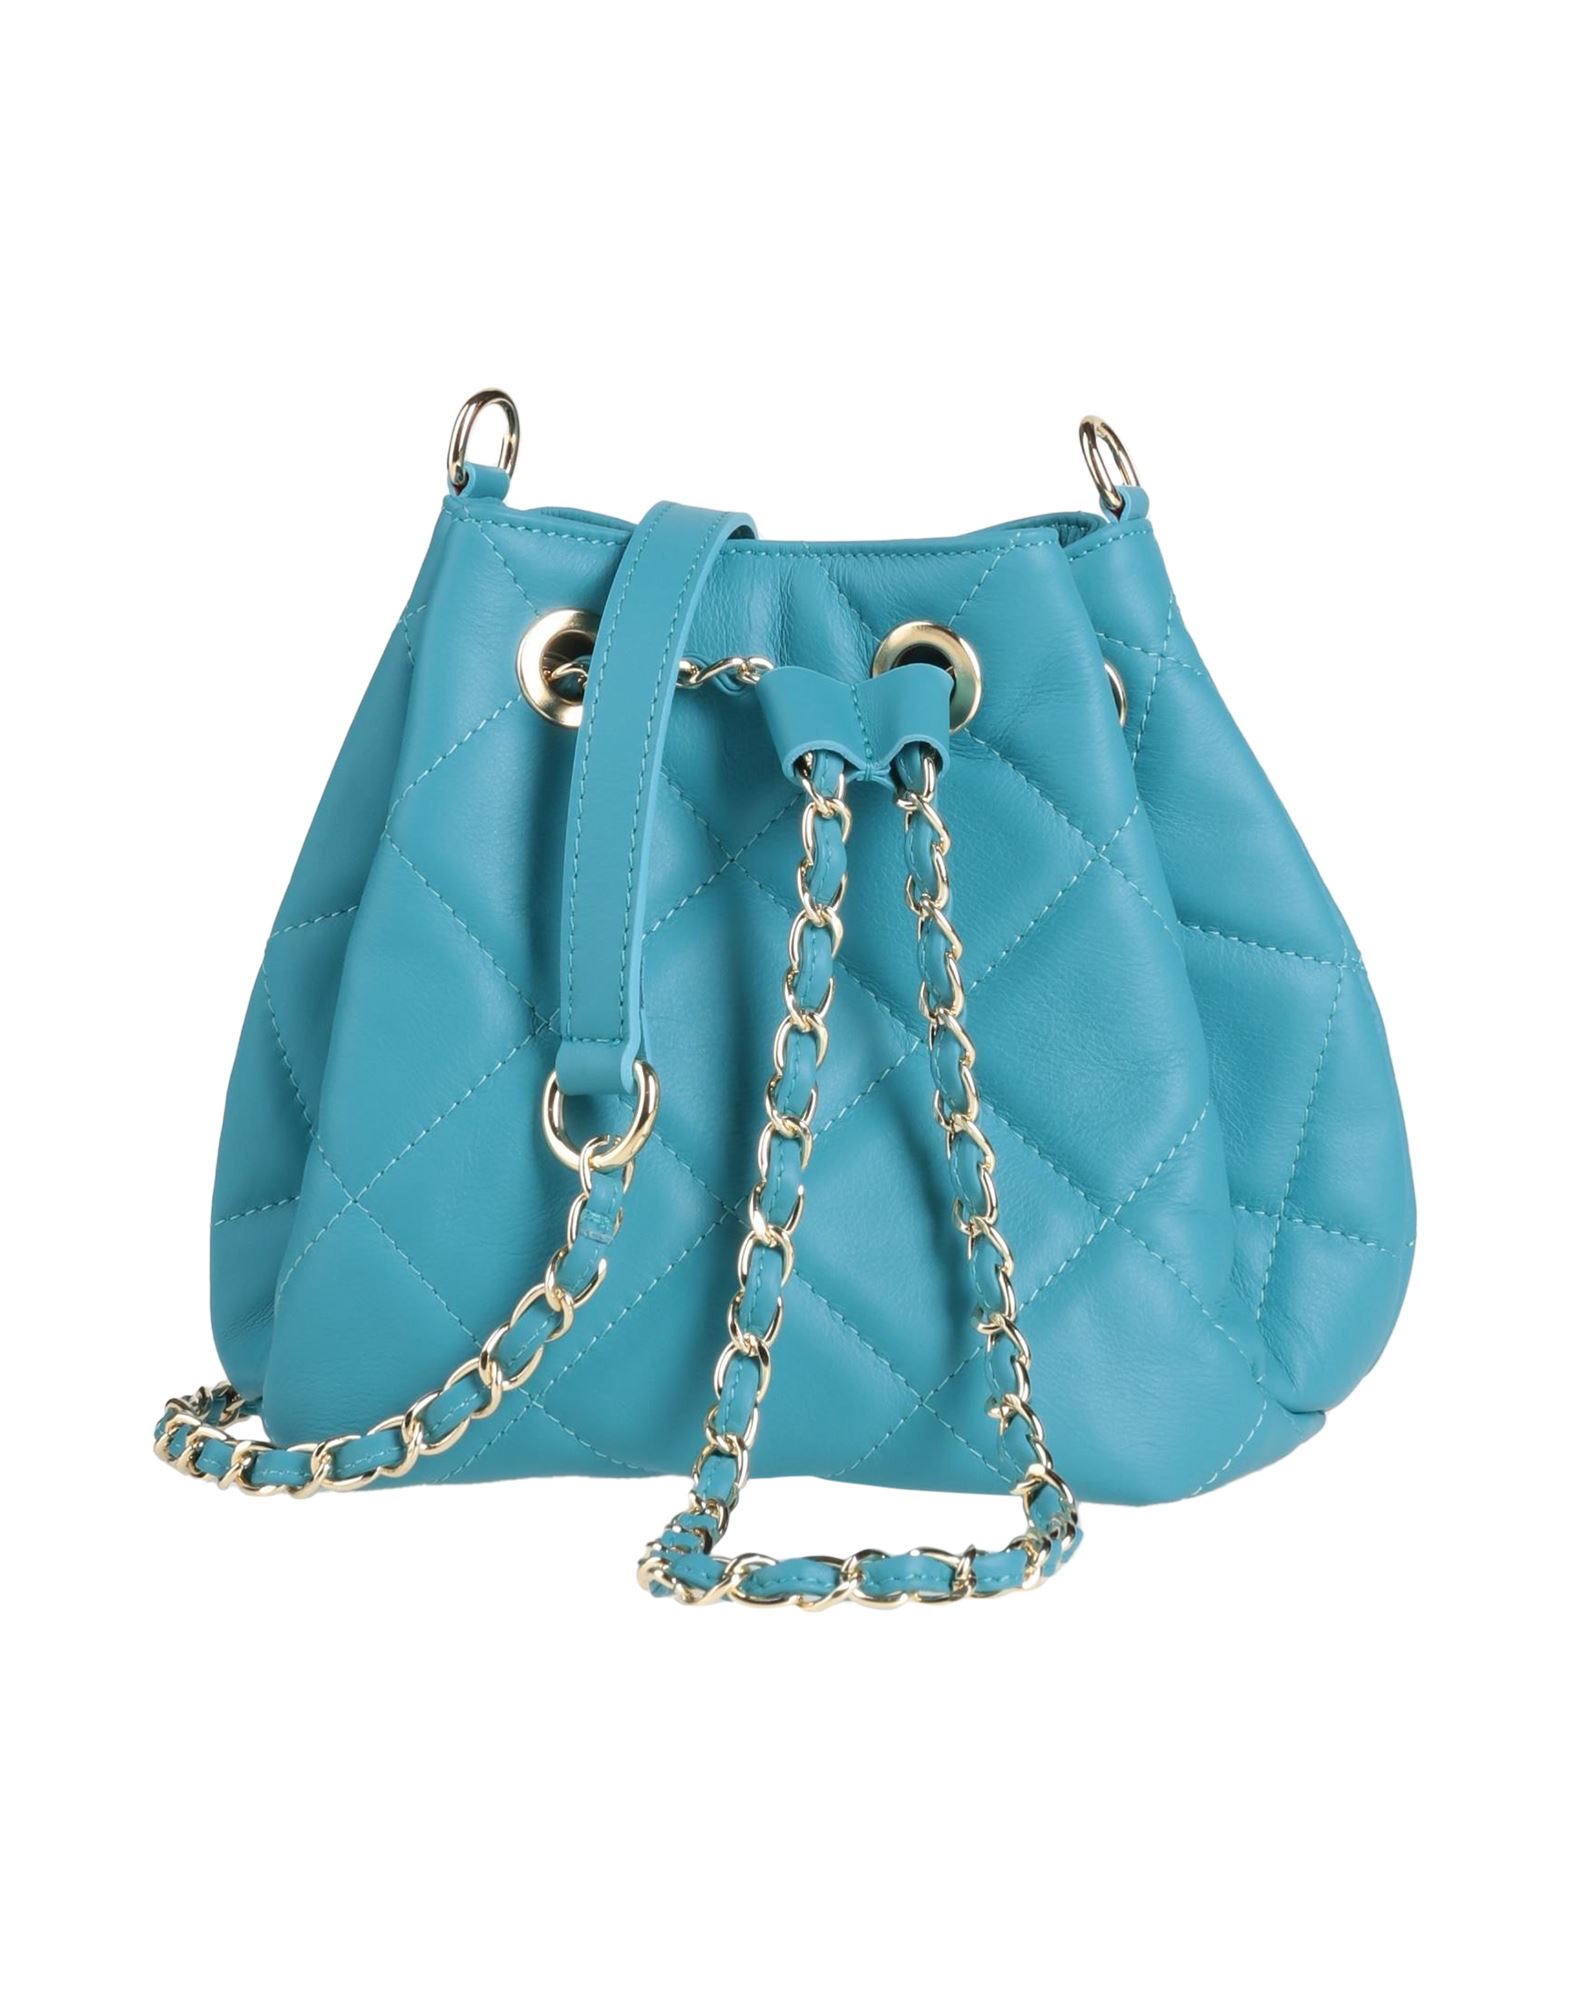 Ab Asia Bellucci Handbags In Azure